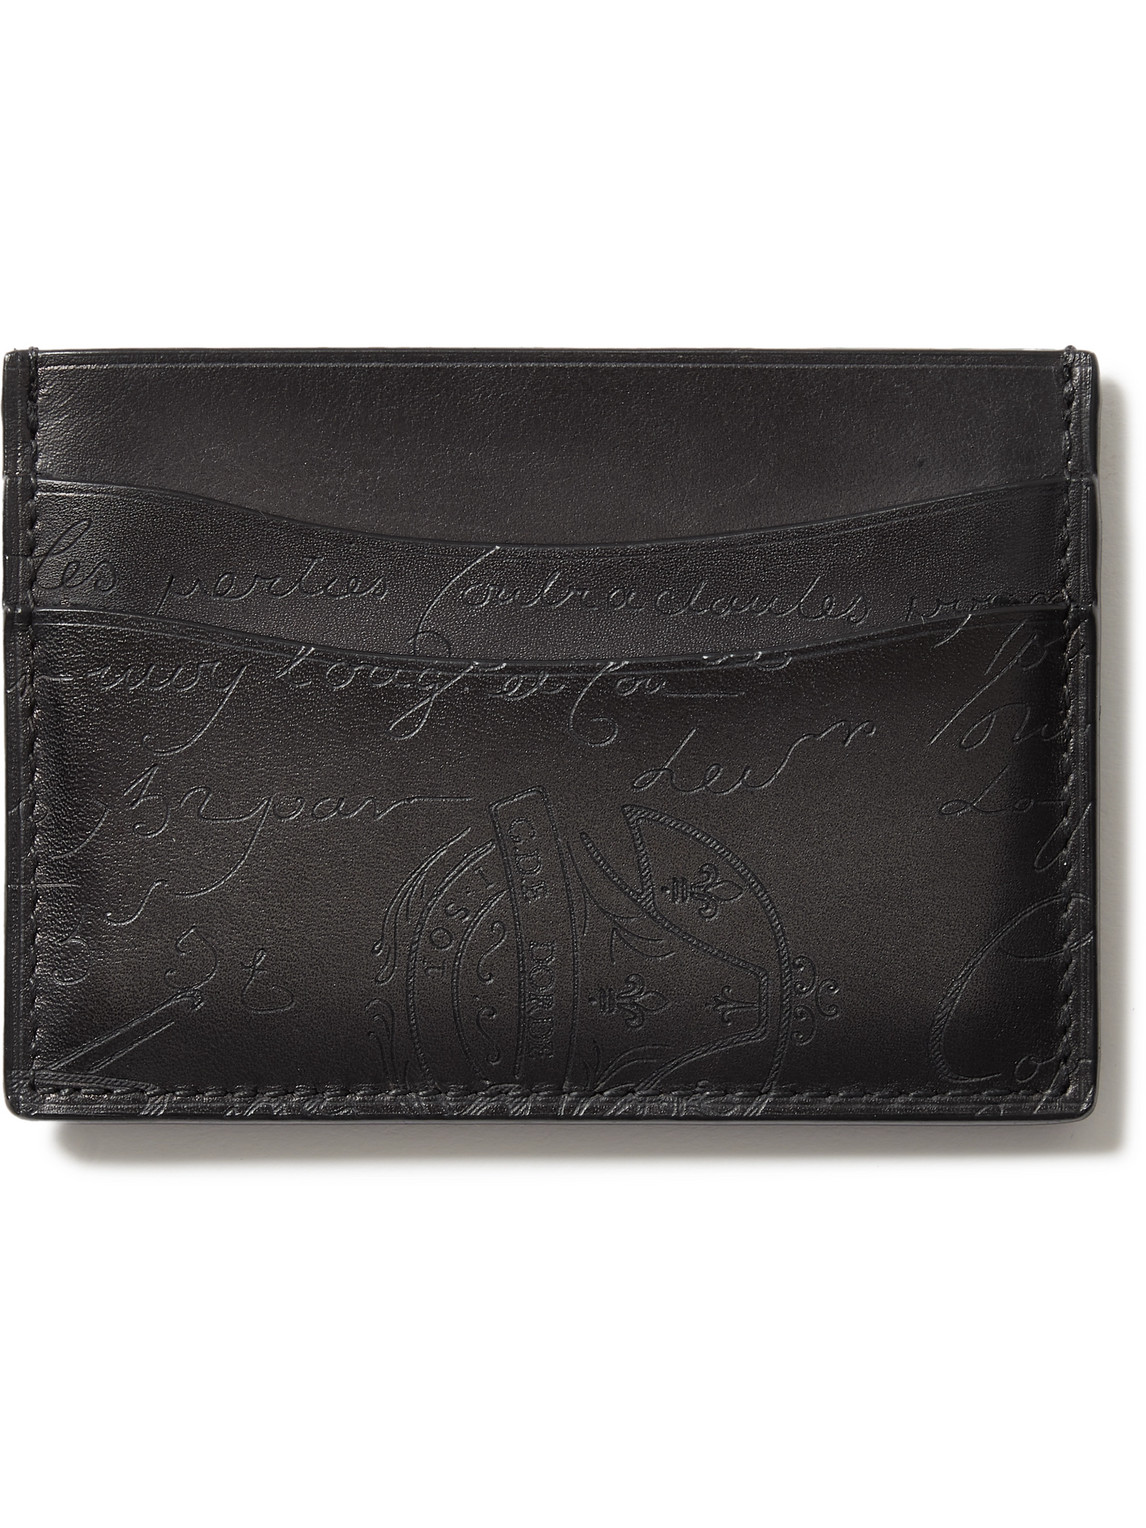 Berluti Scritto Venezia Leather Cardholder In Black